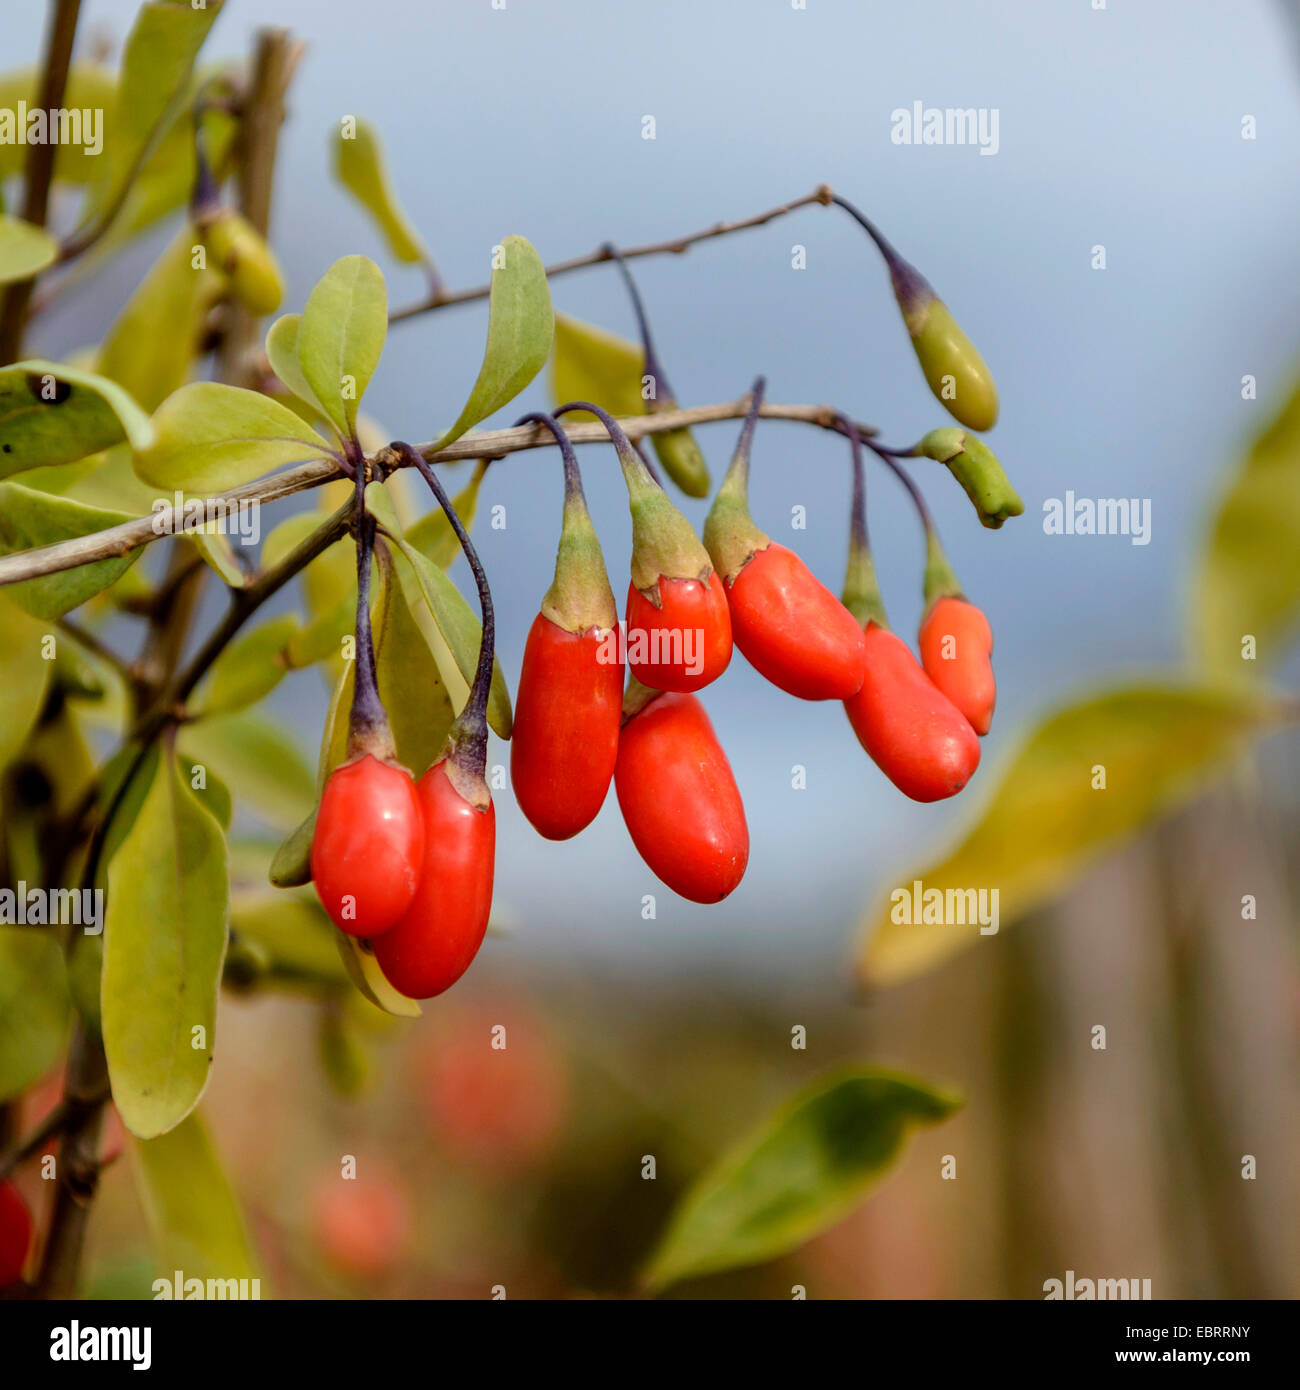 Chinese wolfberry, common matrimony vine (Lycium barbarum 'New Big', Lycium barbarum New Big), goji berries, cultivar New Big Stock Photo